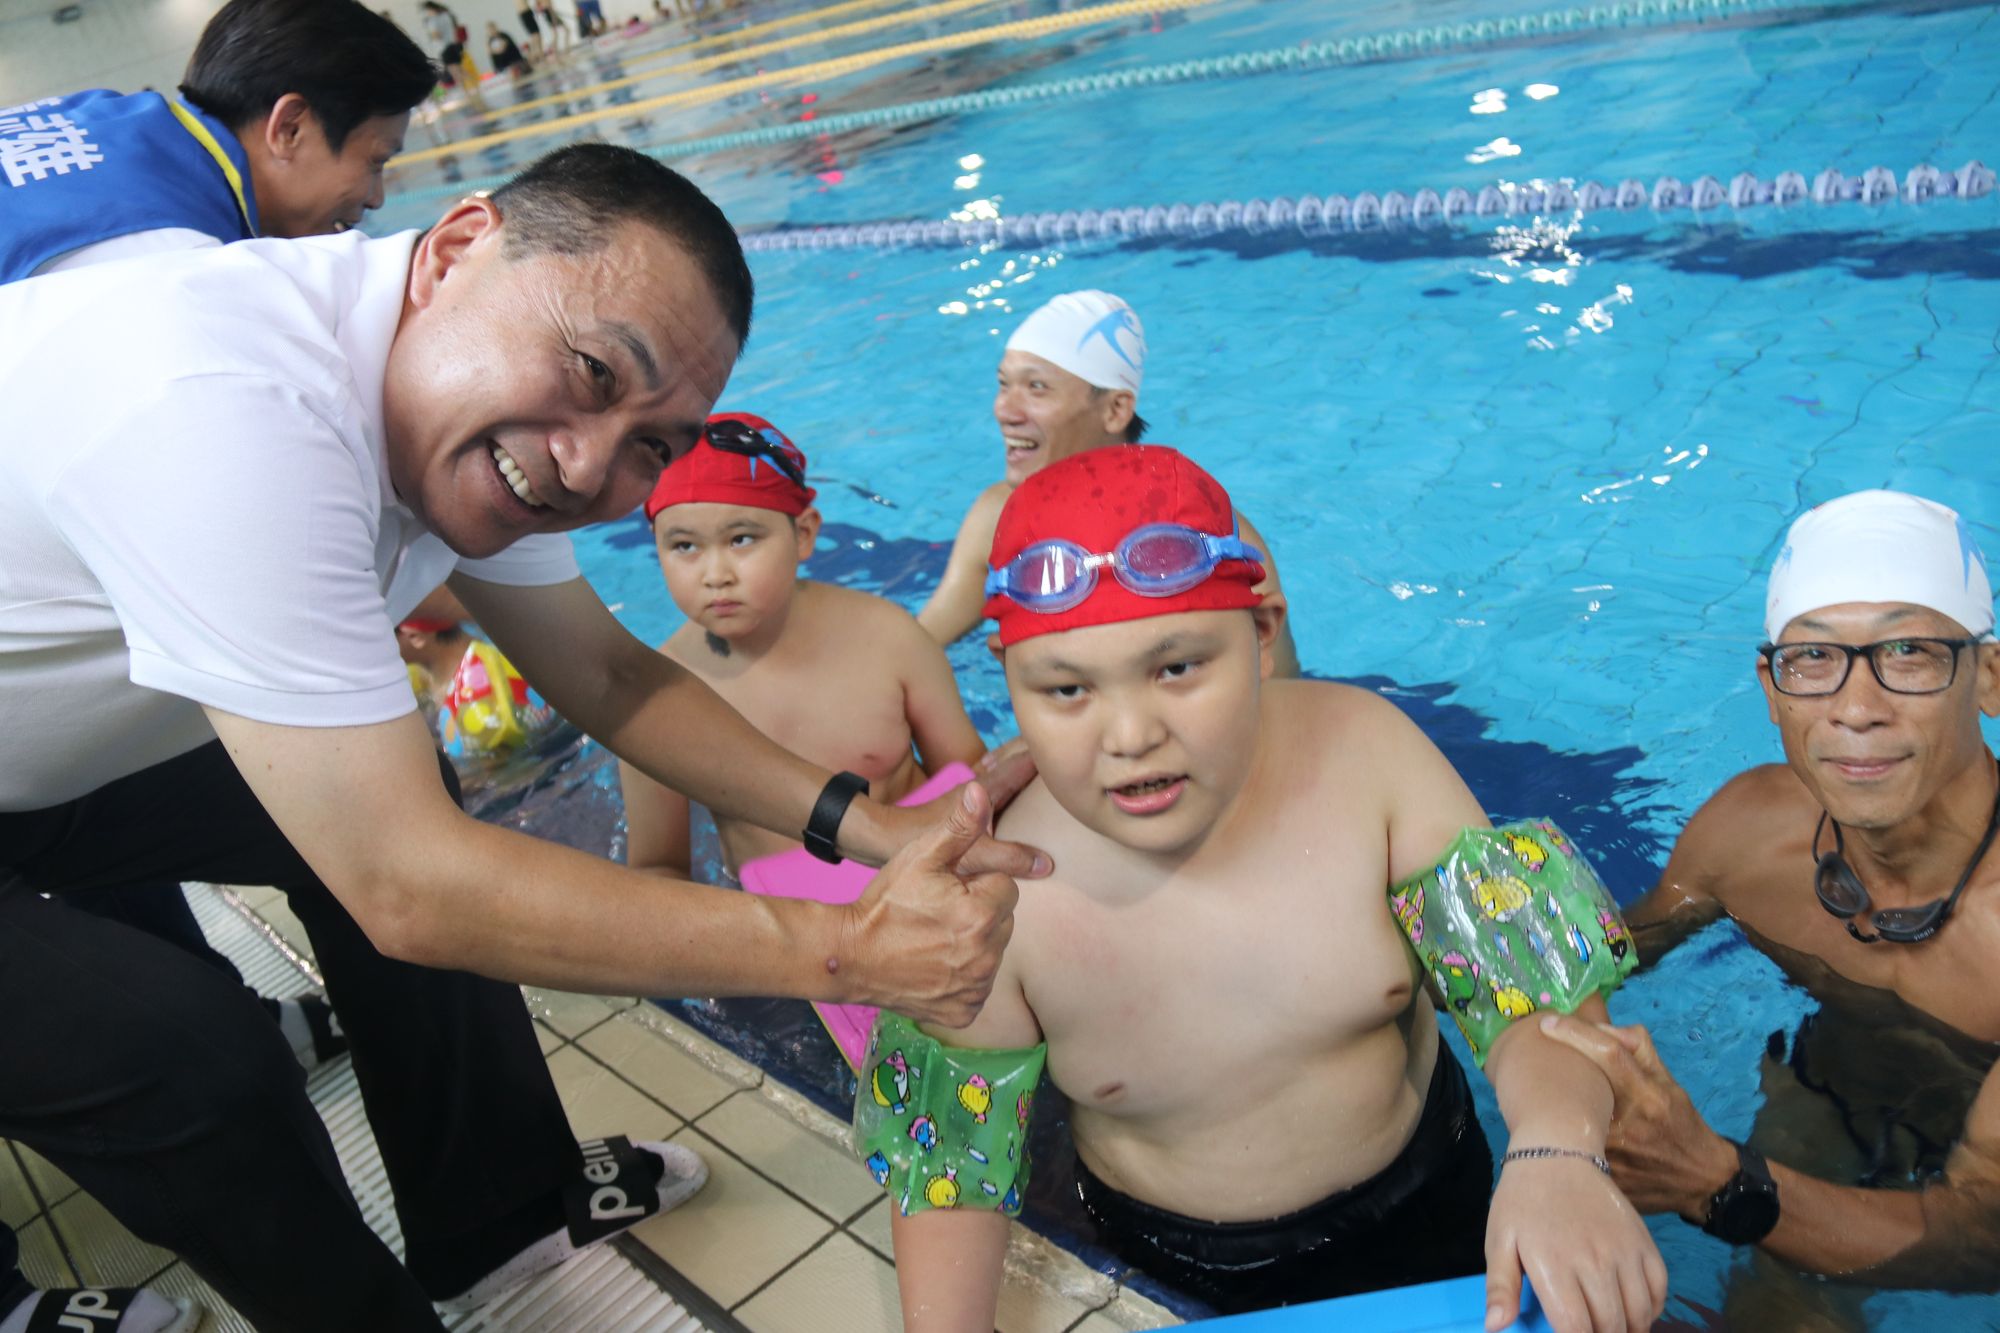 1080907樹林參與式預算辦身心障礙孩童泳課 侯友宜期勉暢游生活泳抱健康2